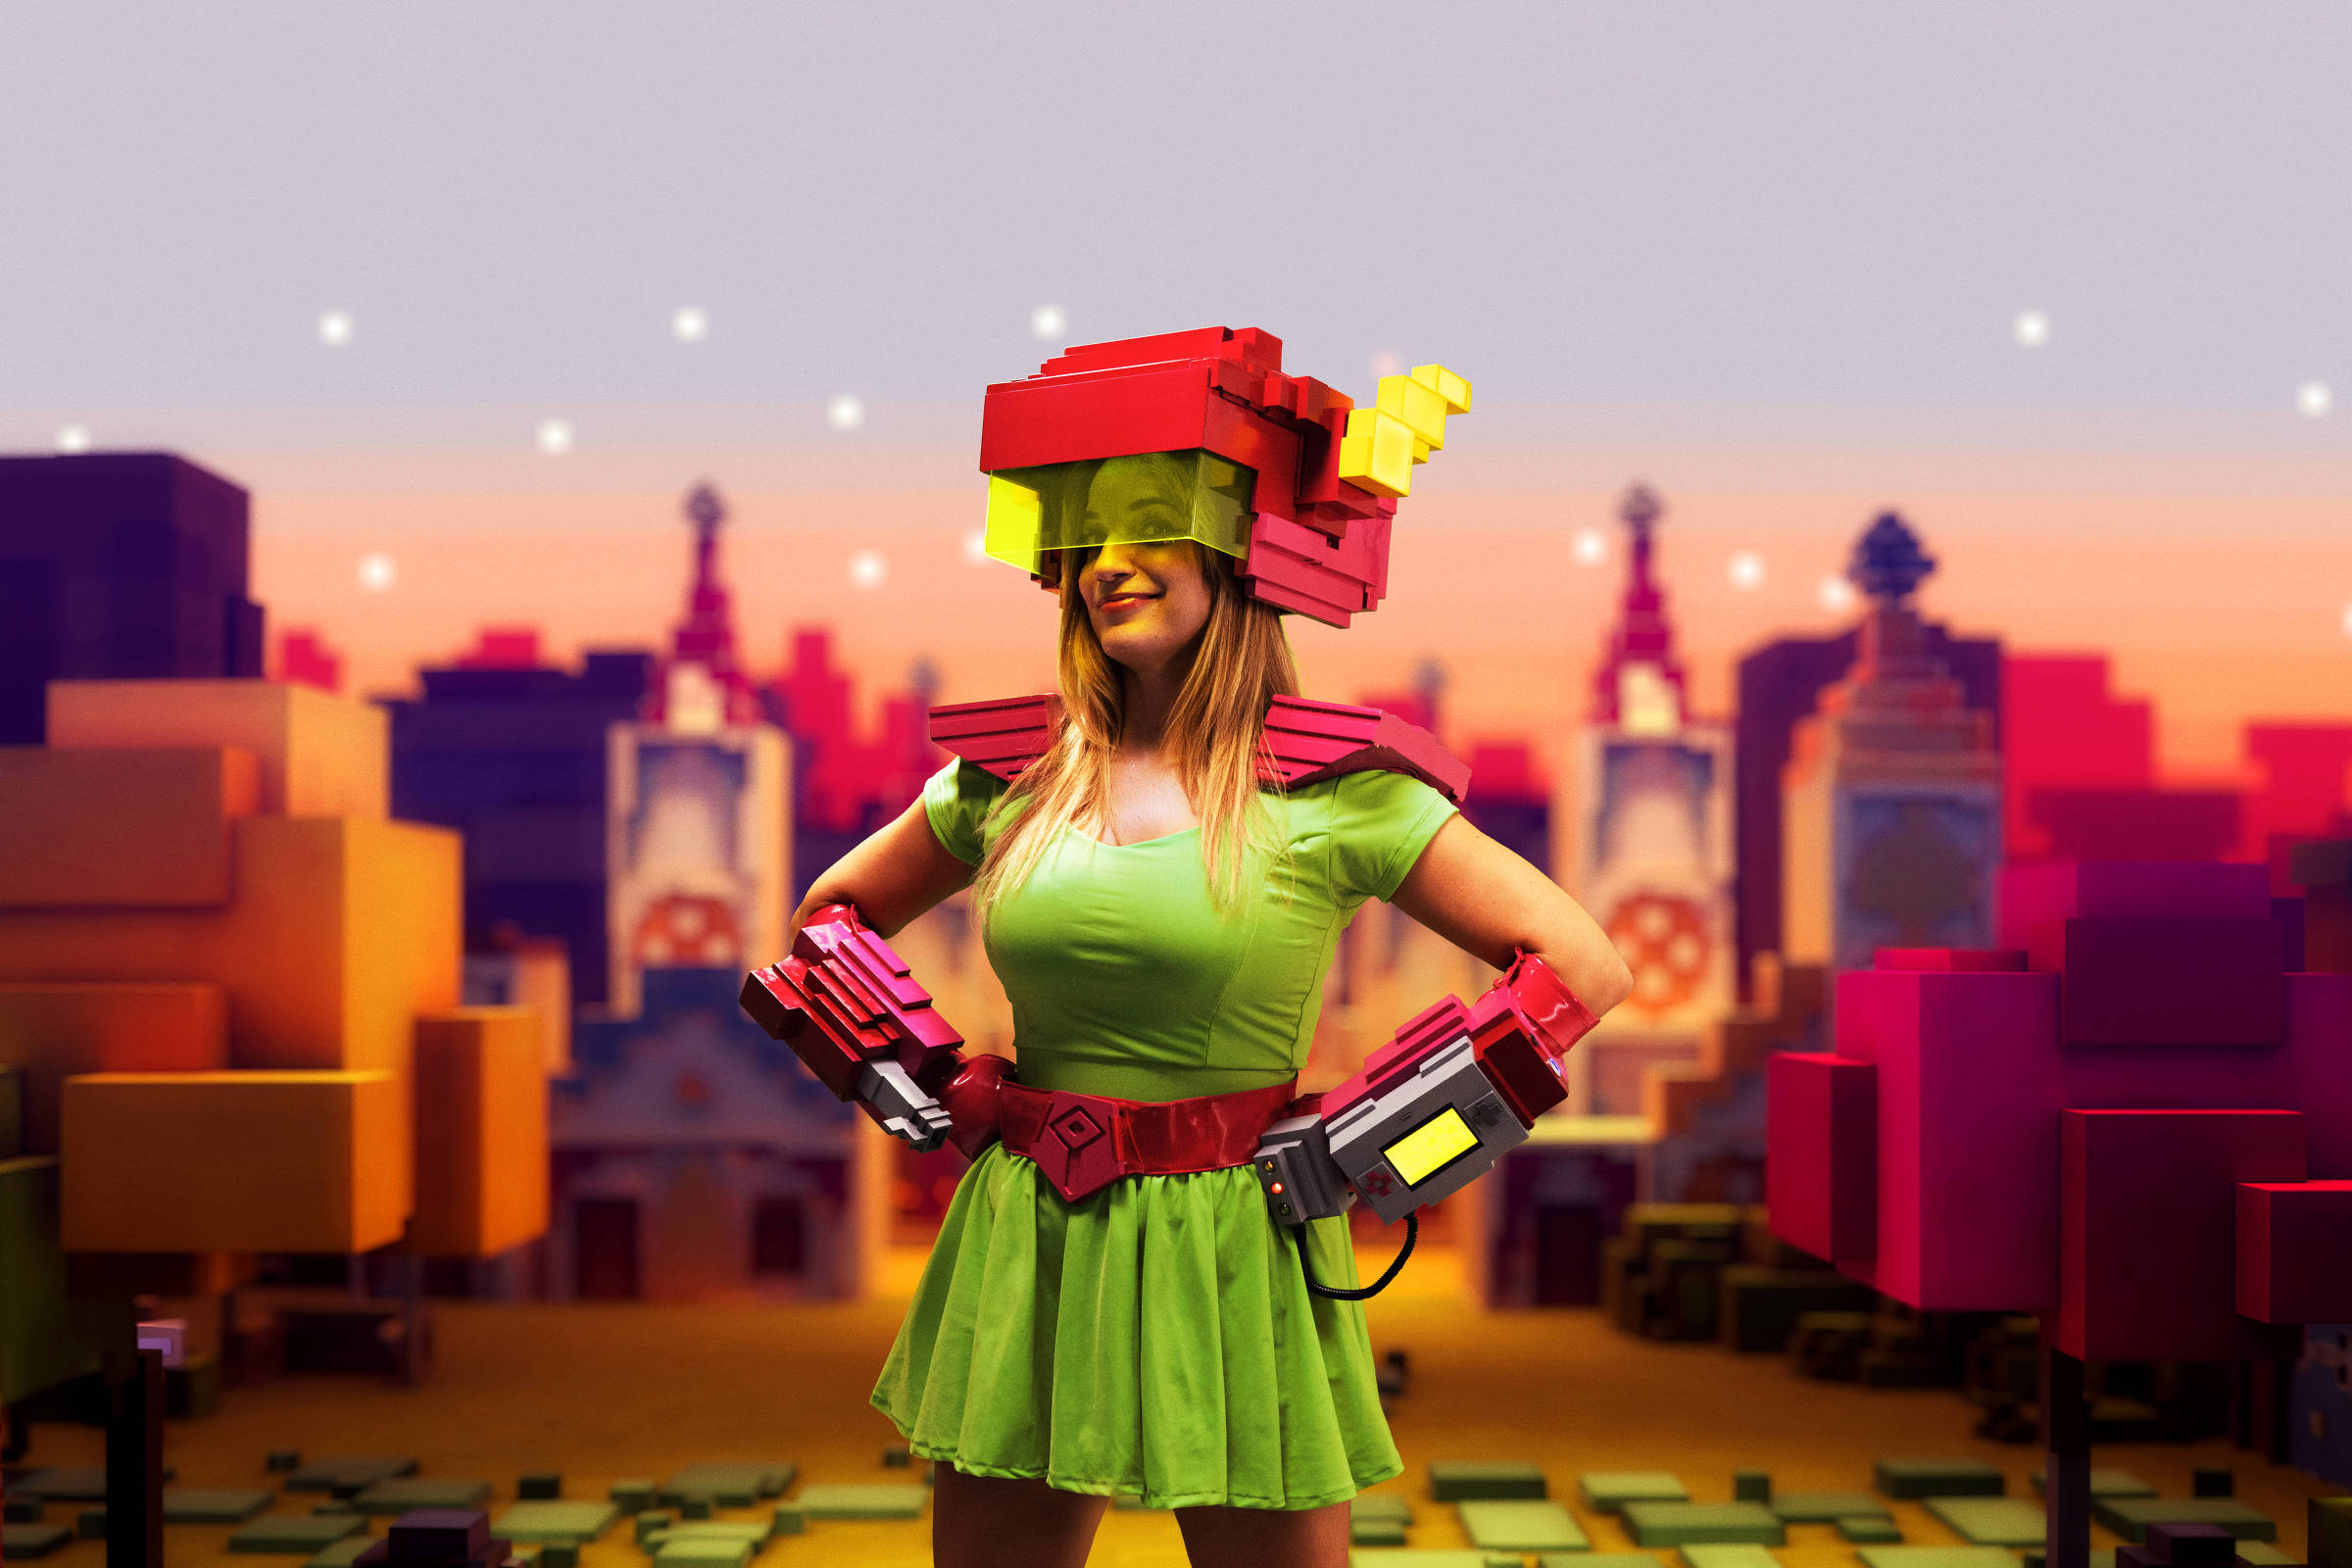 Mairoj, um jogo brasileiro que mistura o real com o virtual. – Indie Games  Brasil